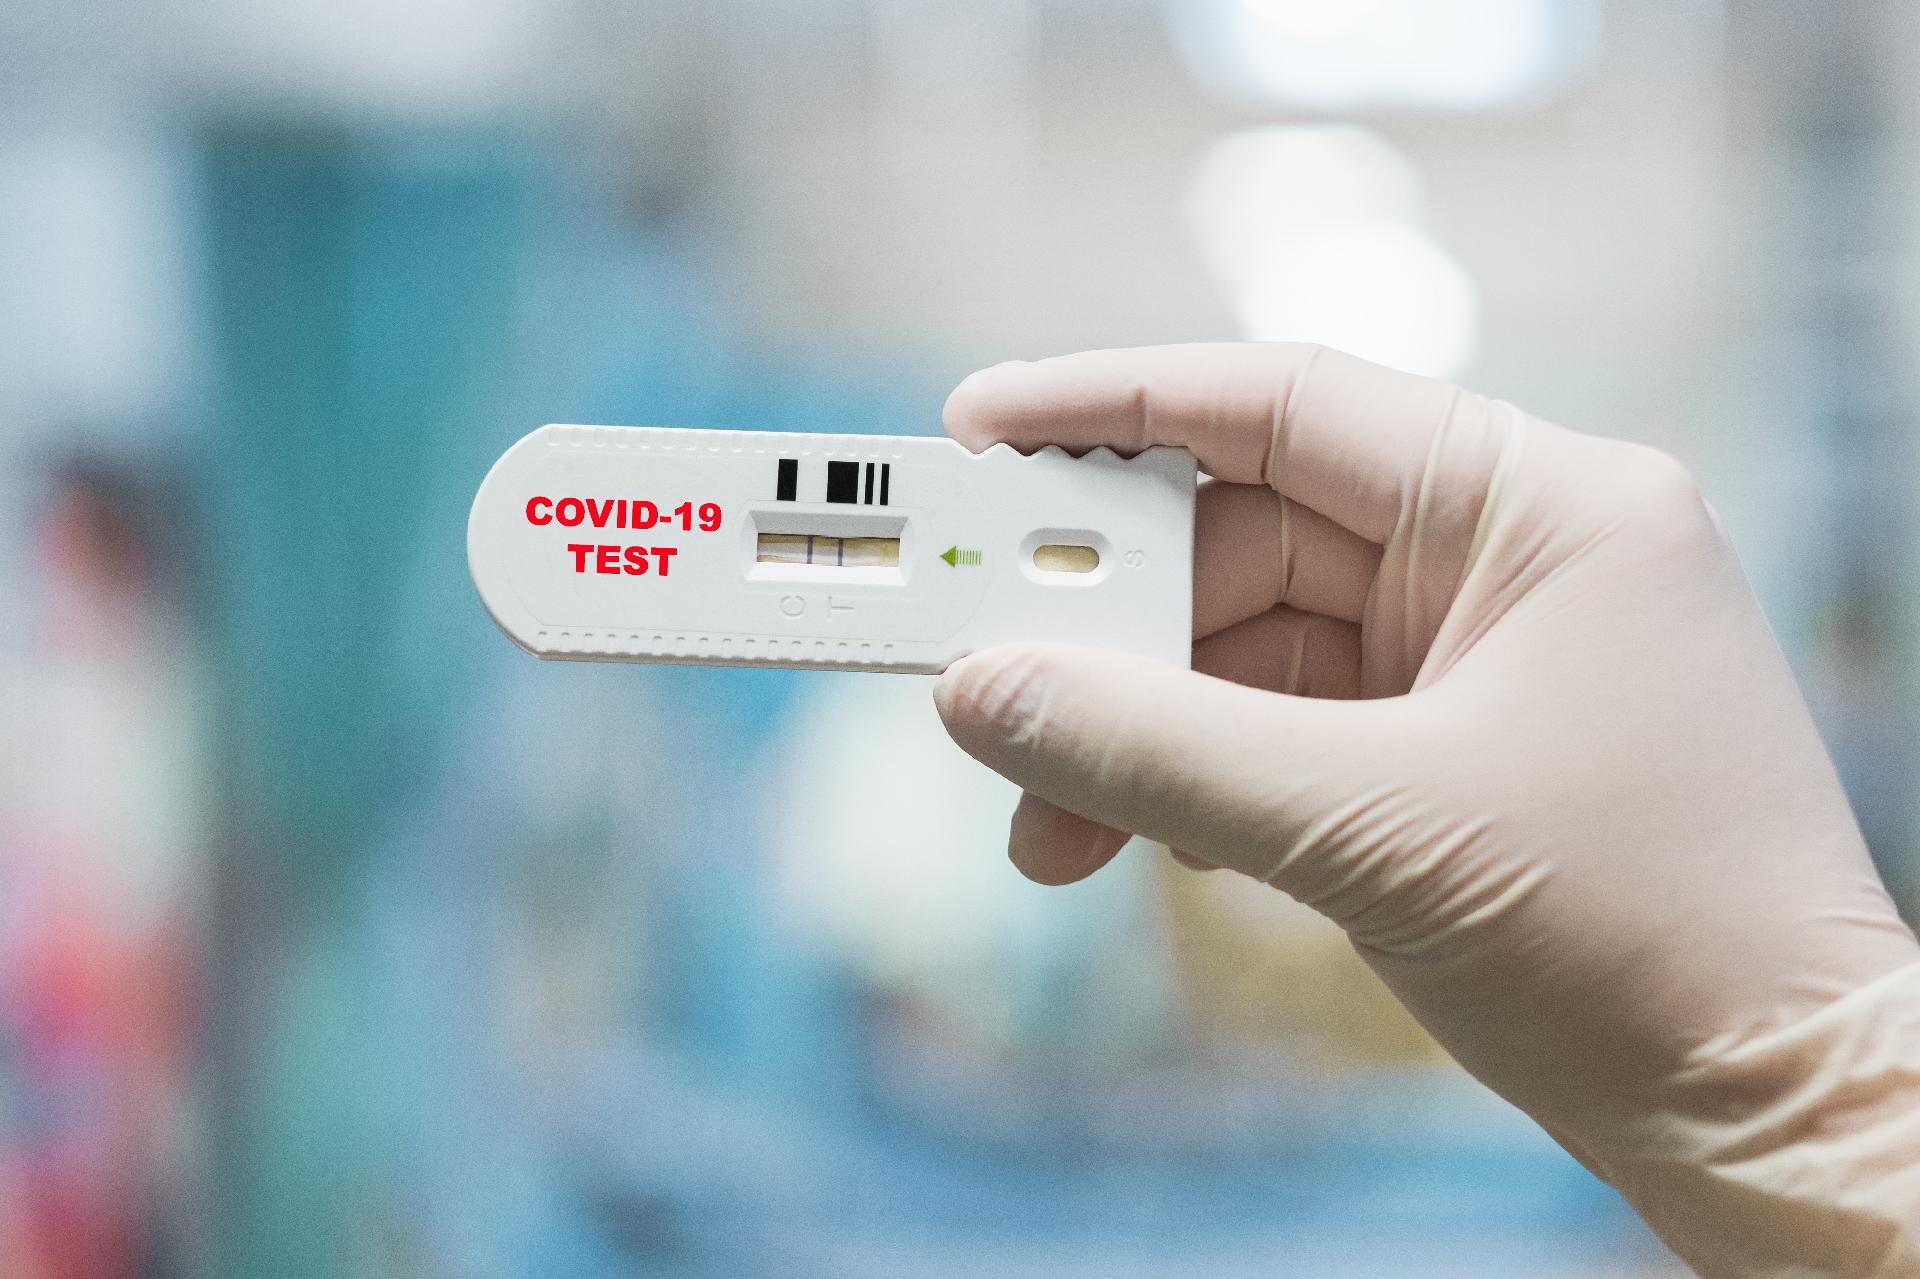 Coronavirus Israelenses Criam Teste Caseiro Para Covid 19 Com Resultado Em Menos De 1h